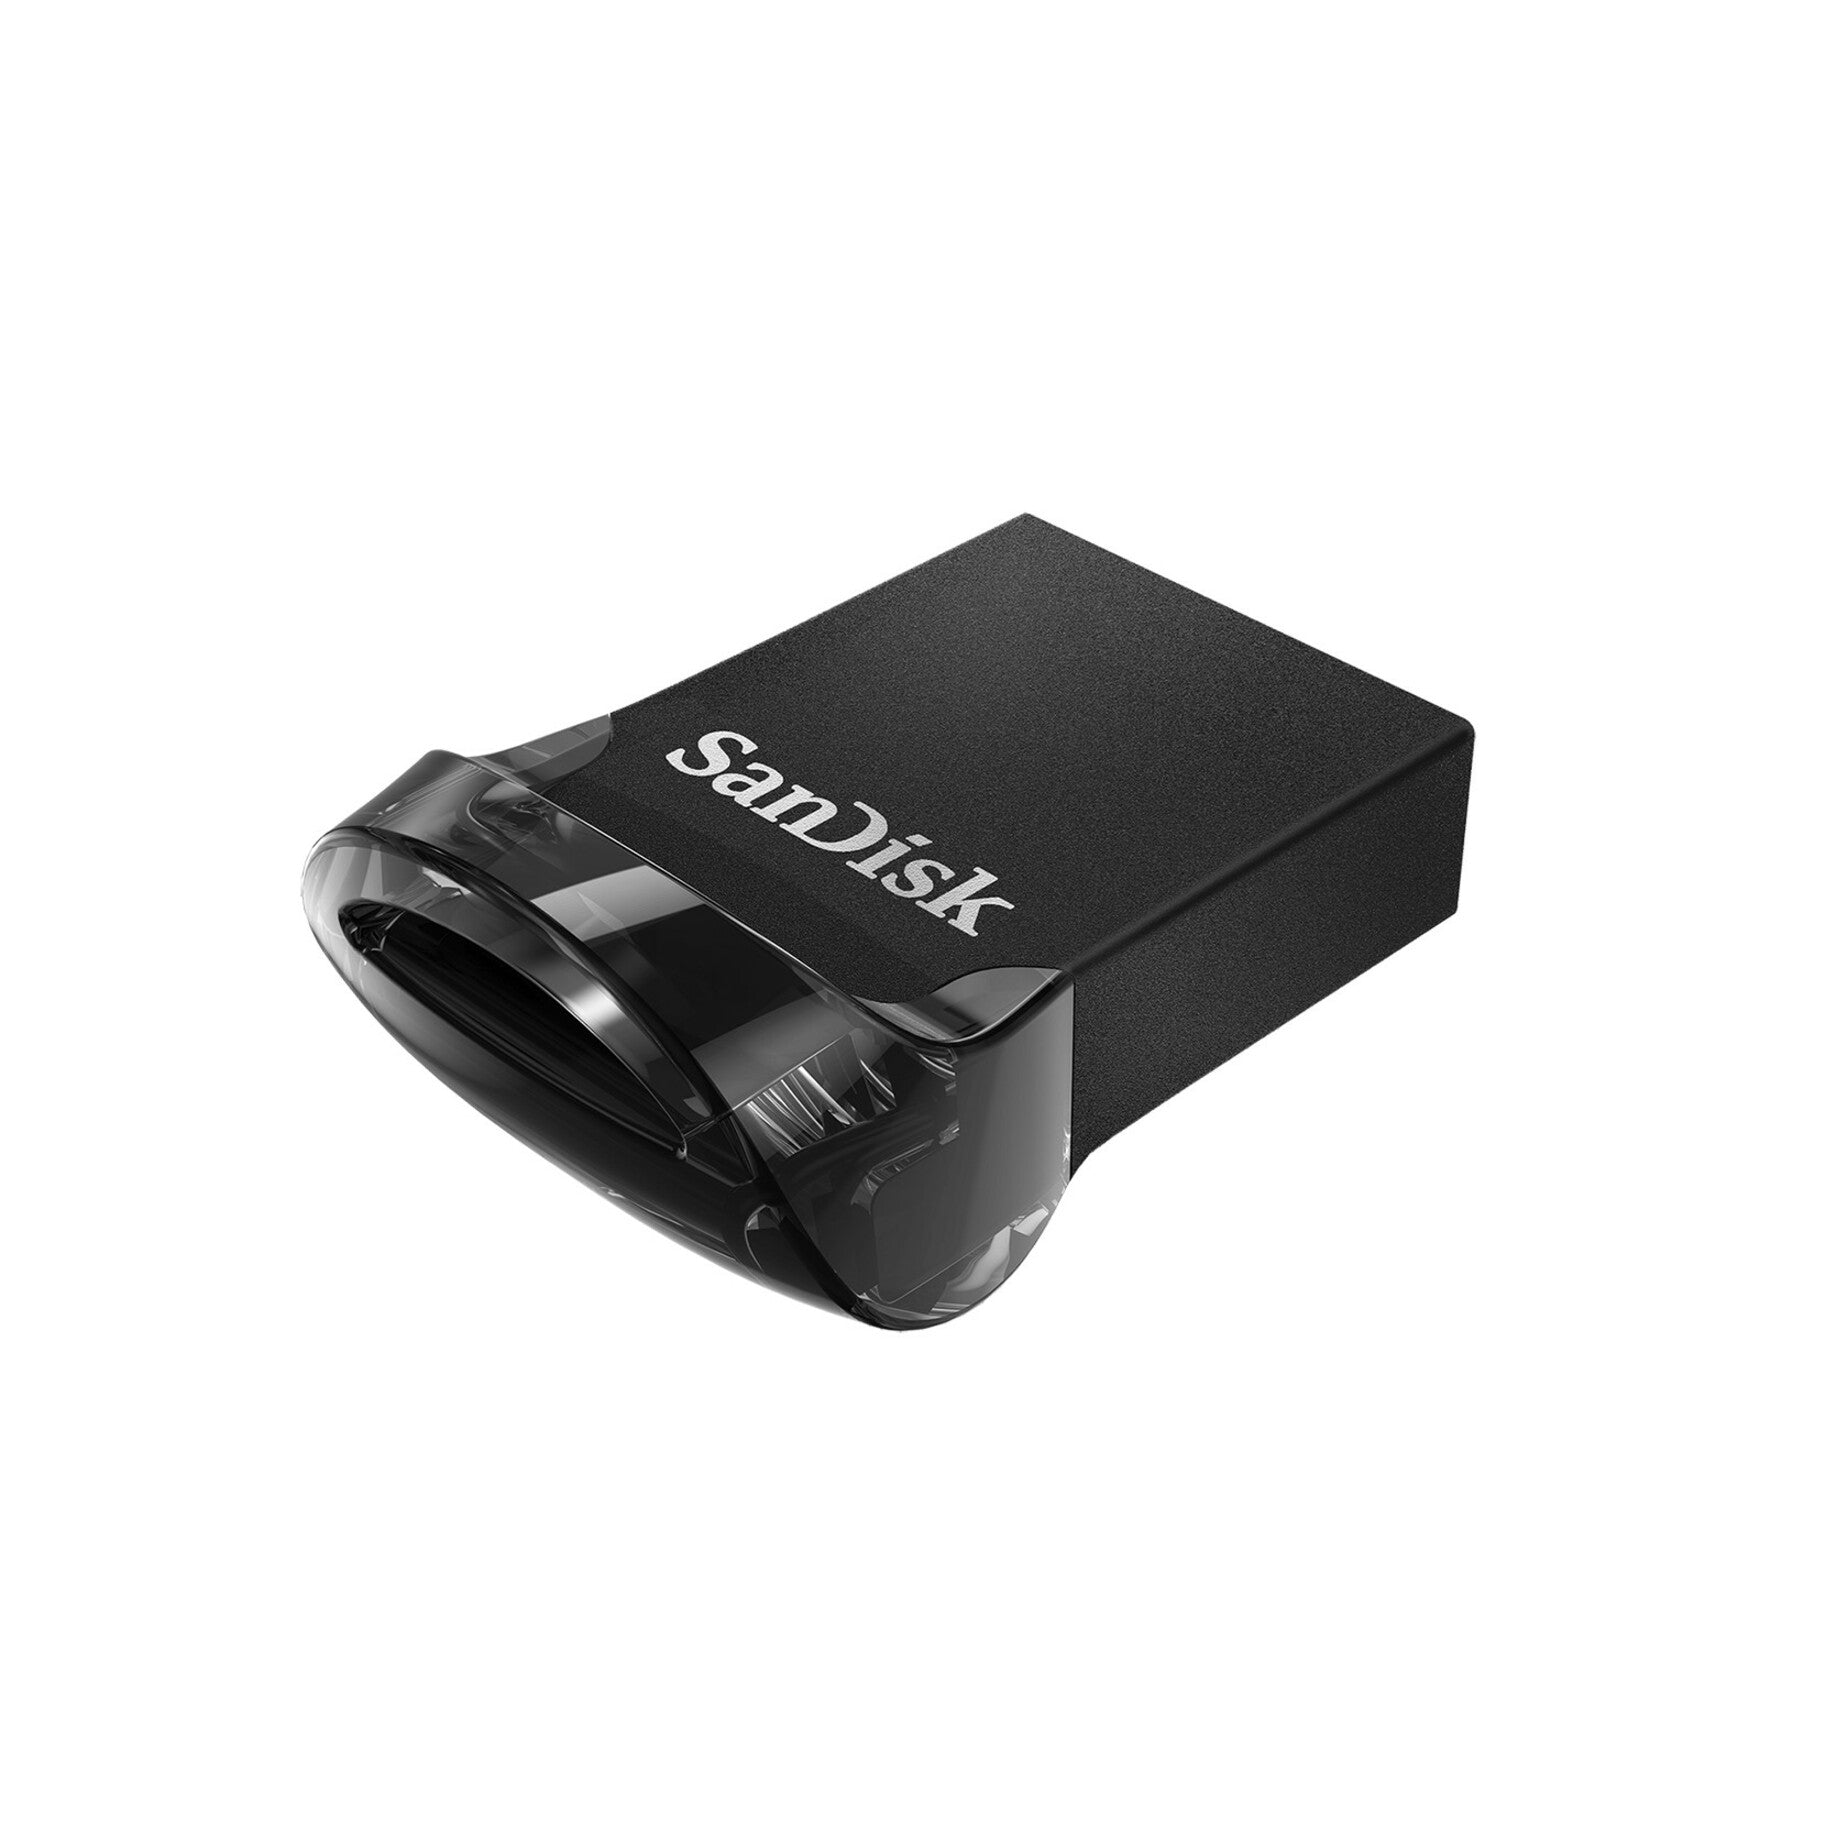 闪迪 SDCZ430-032G-A46 至尊迷你USB 3.1 闪存盘 32GB，高速数据传输和紧凑设计